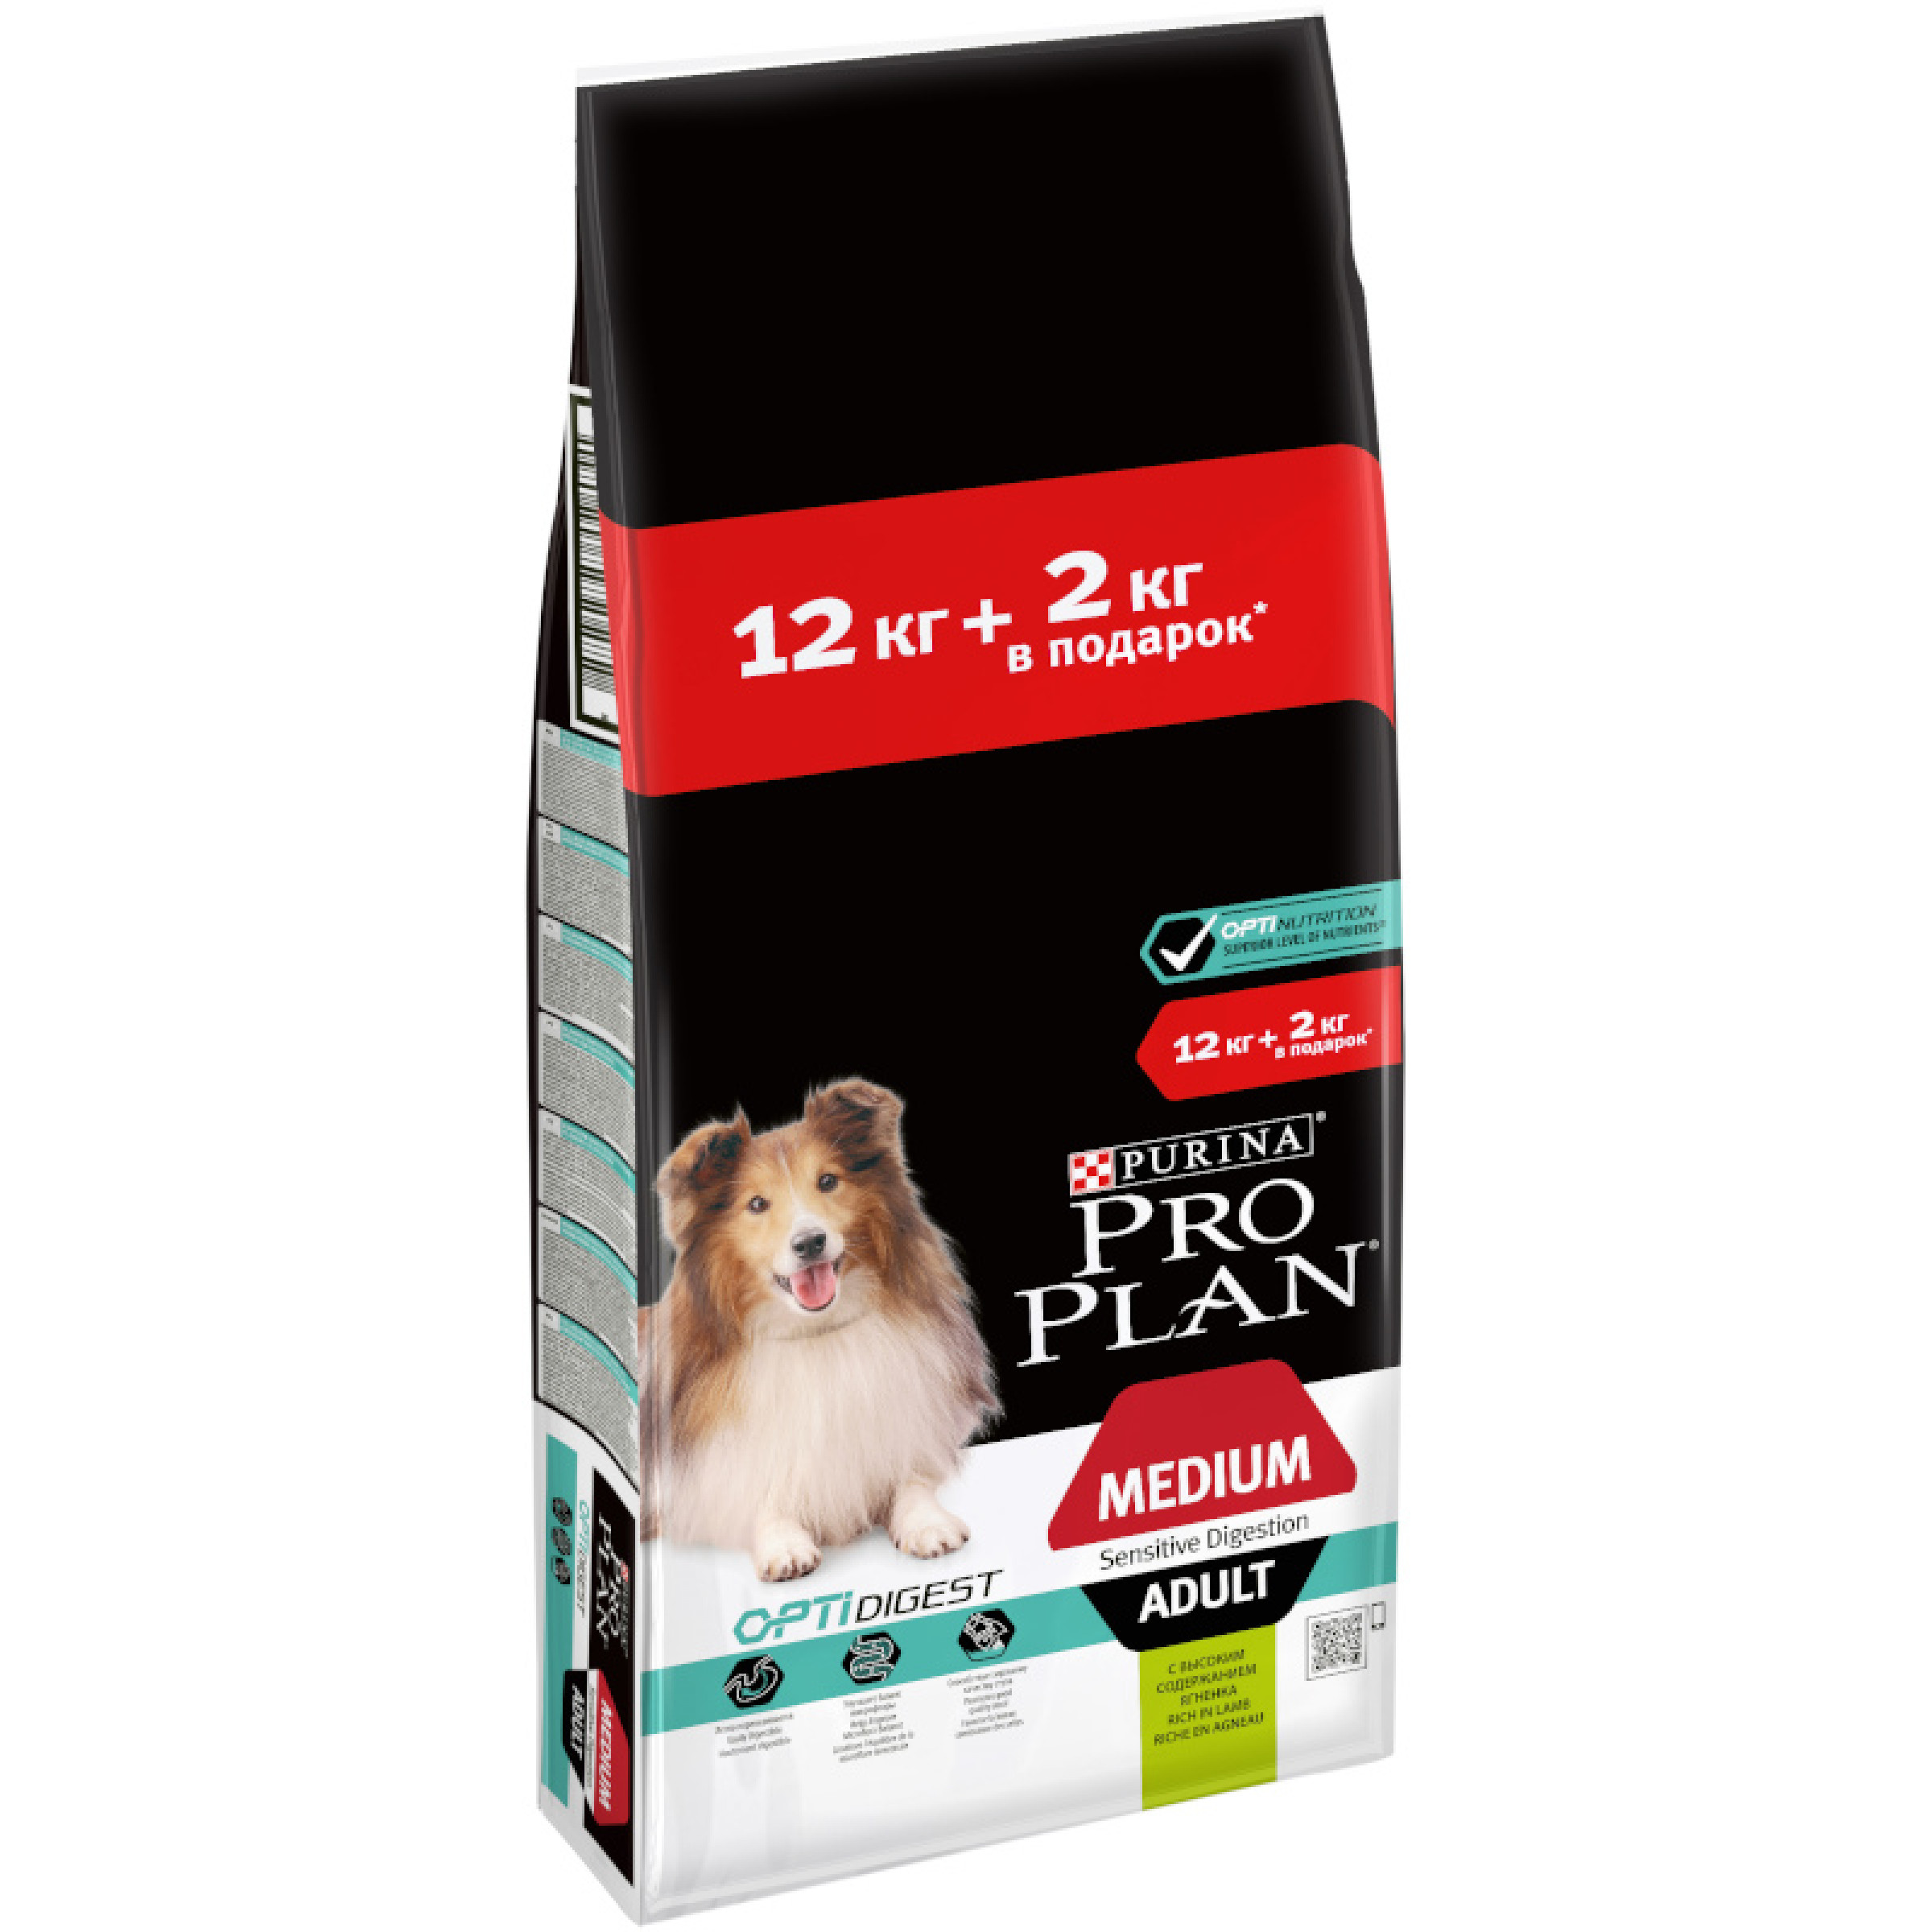 Сухой корм для взрослых собак средних пород с чувствительным пищеварением, с ягненком Purina Pro Plan, 12 кг + 2кг